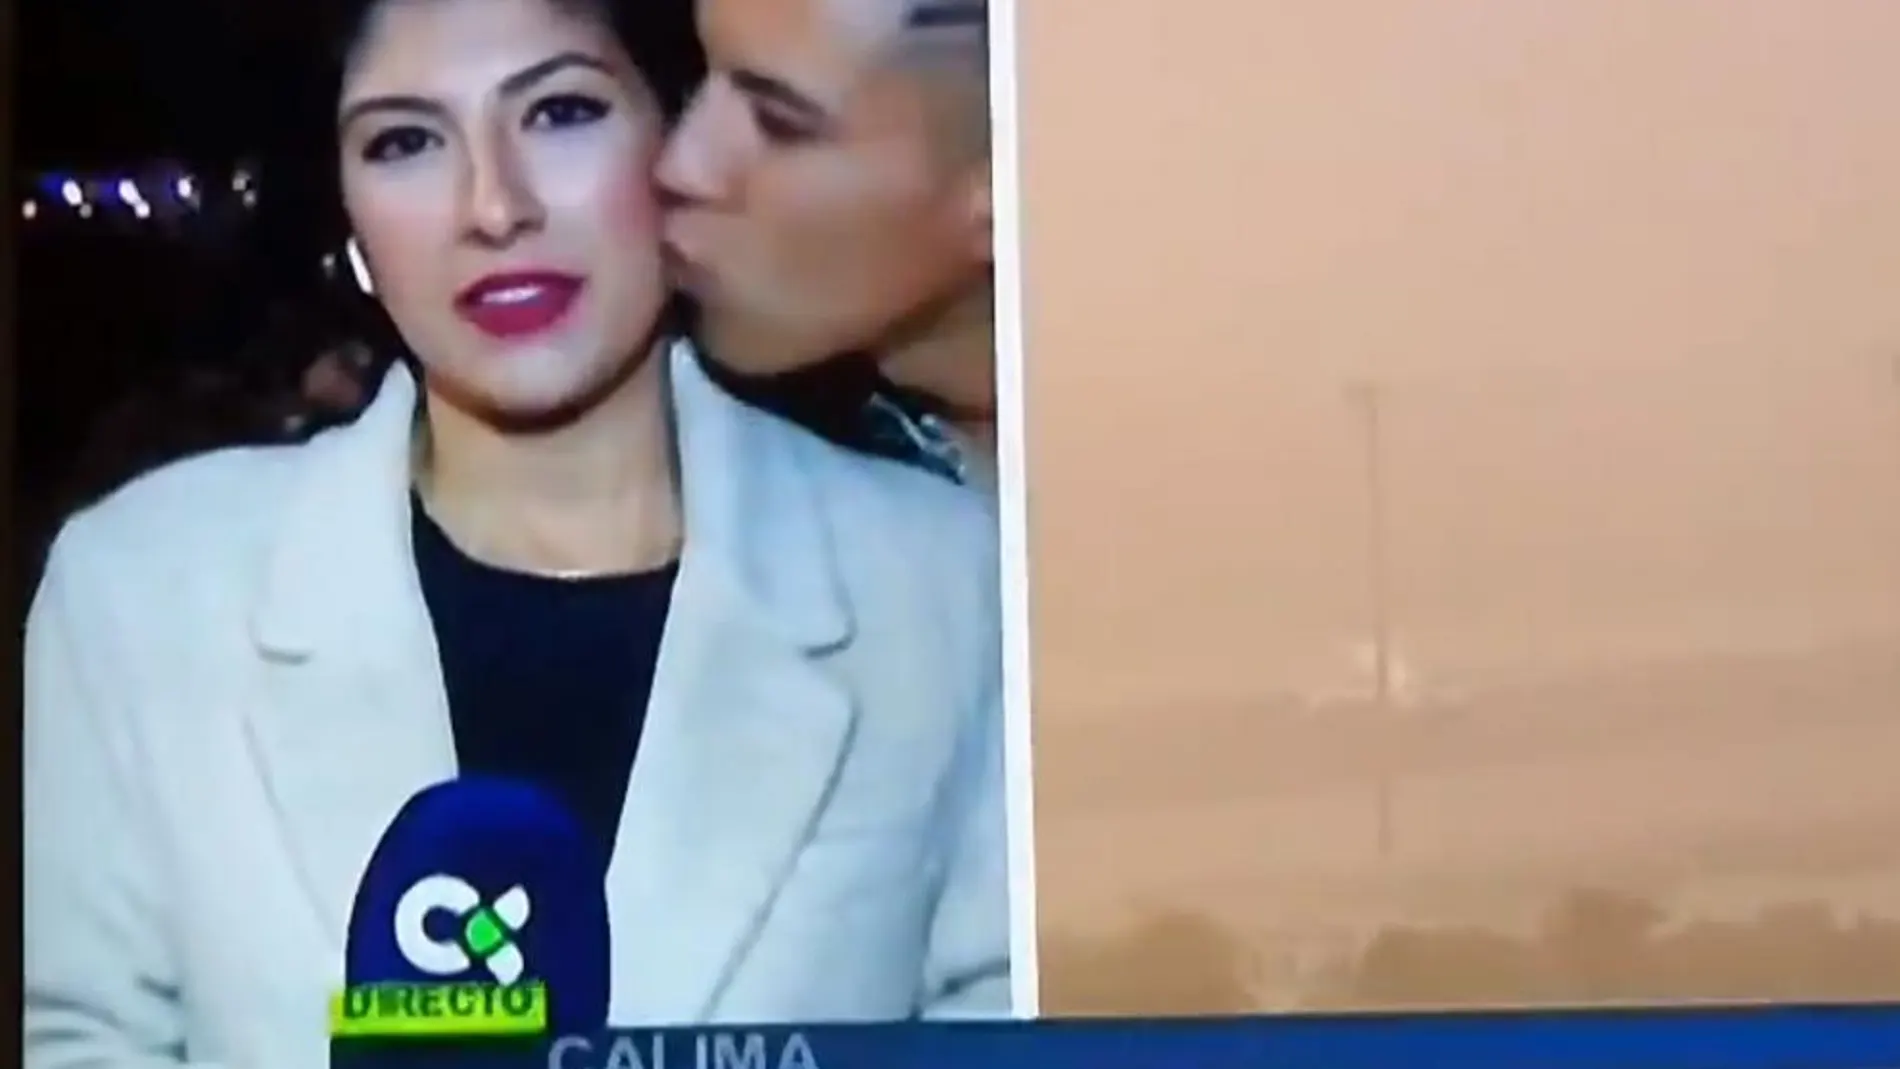 Momento en el que el joven besa a la reportera